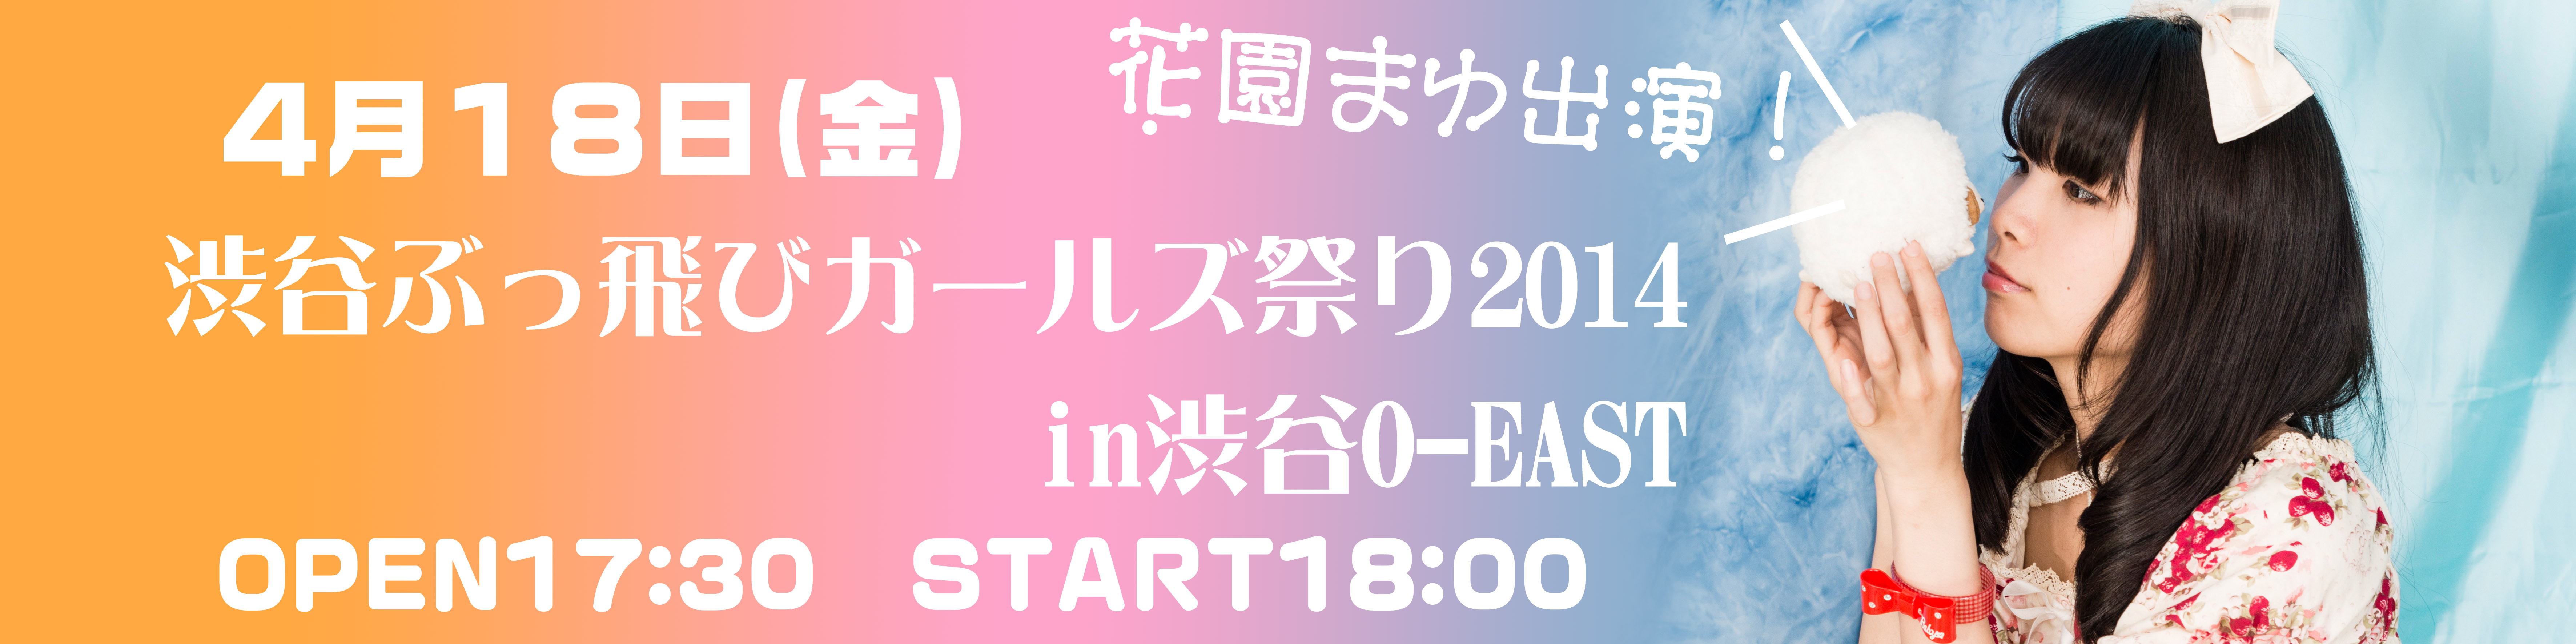 渋谷ぶっ飛び!!ガールズ祭り2014